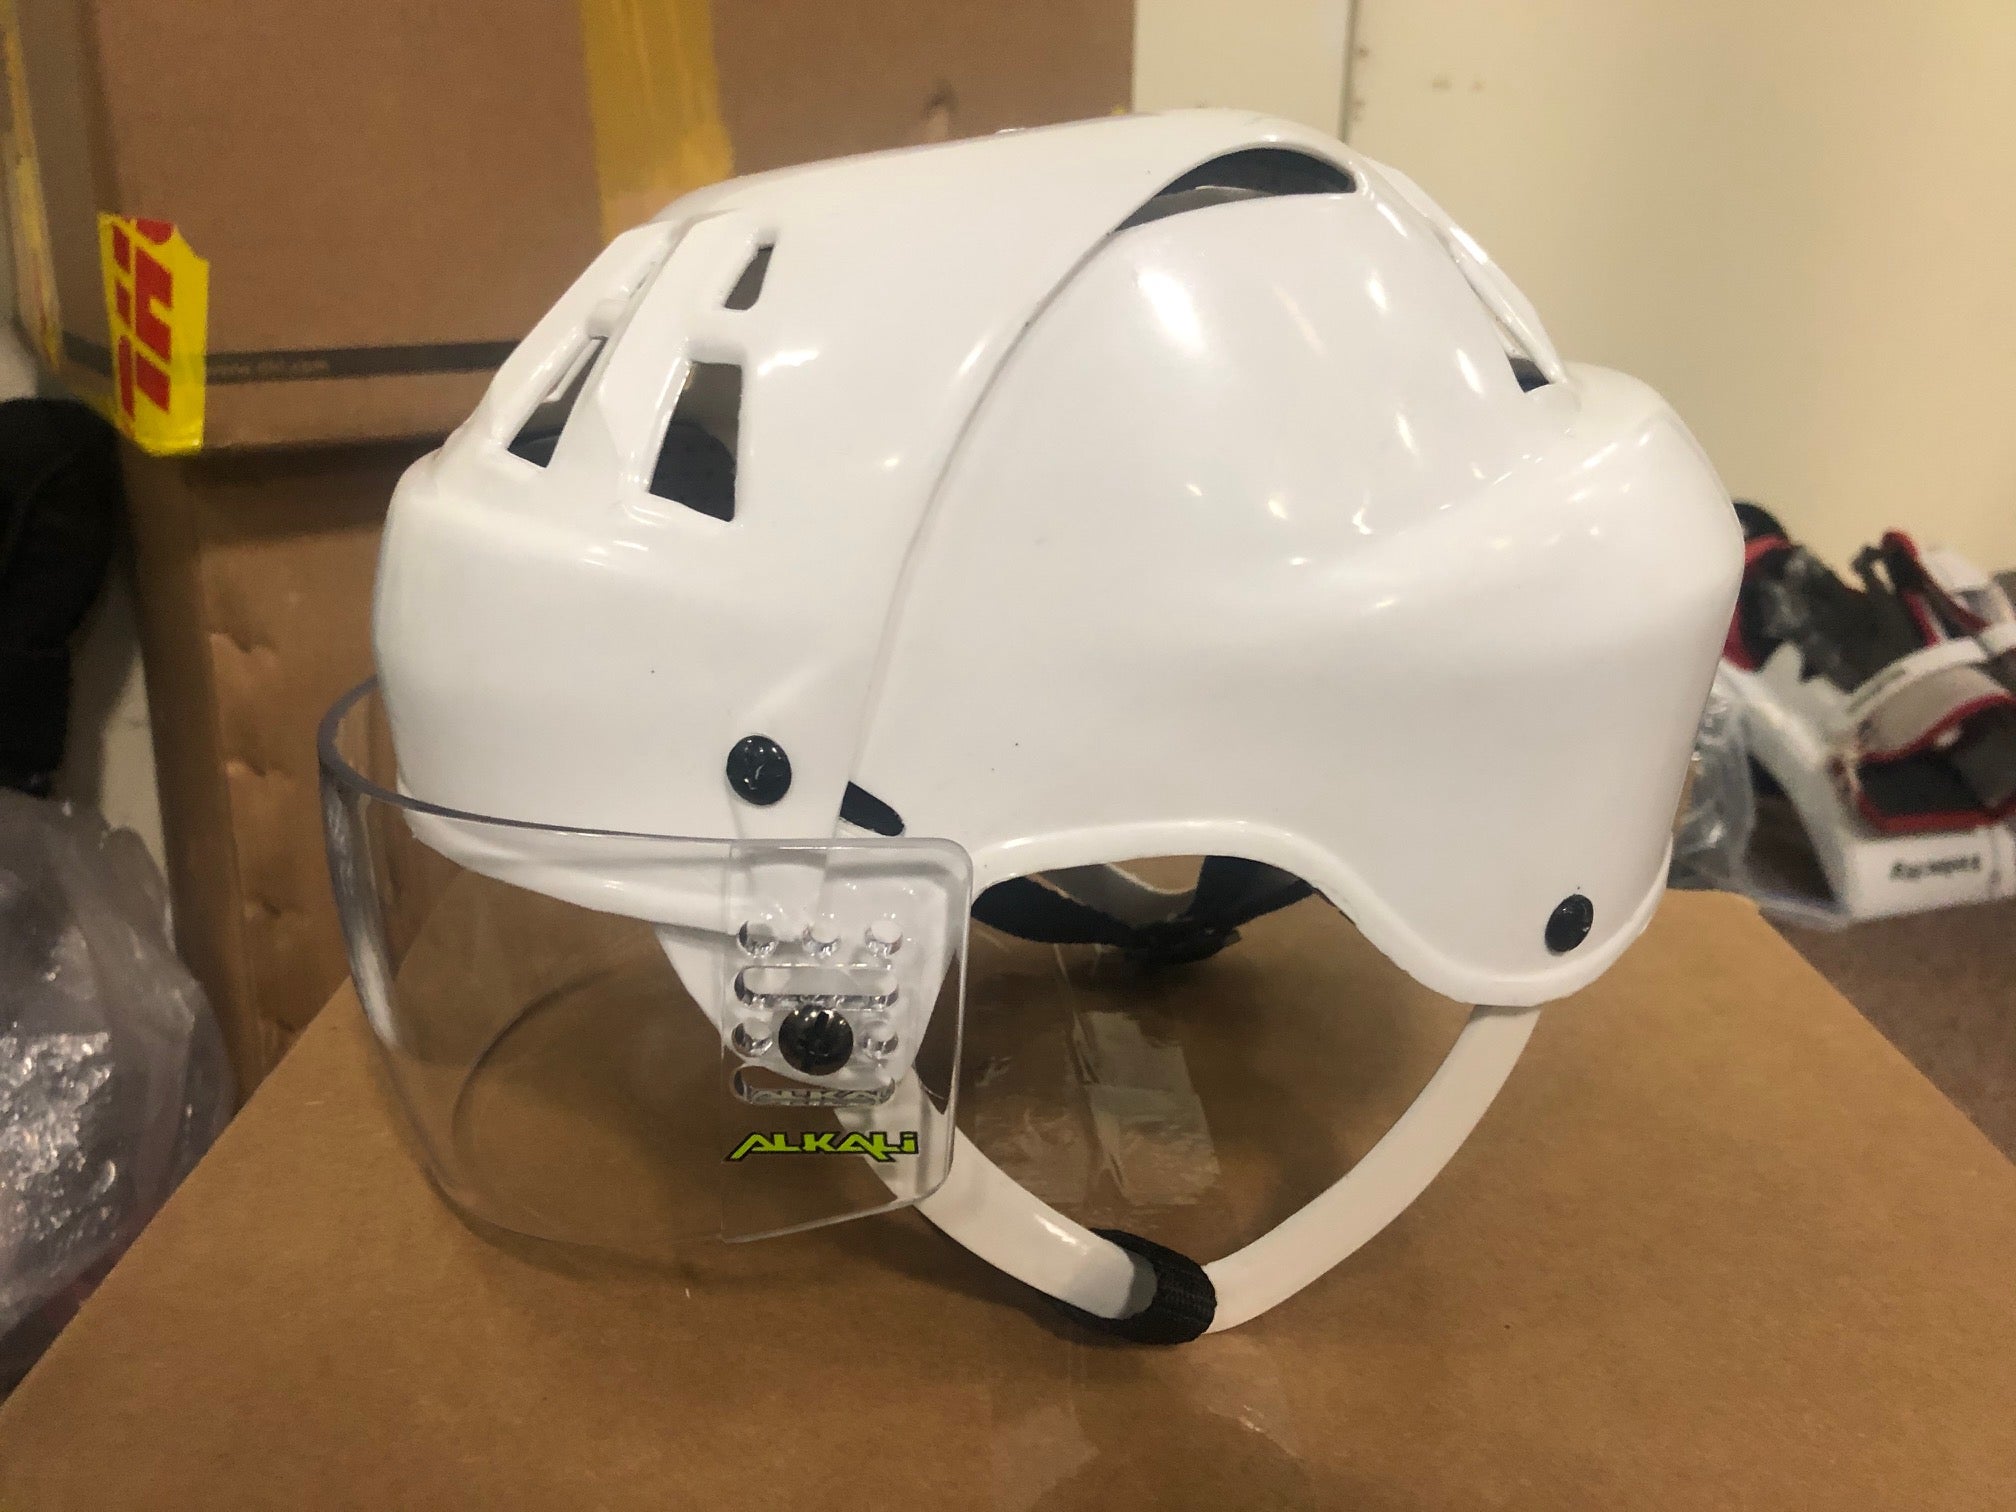 Unused Black Jofa Helmet - Brand New - Style Used by Gretzky and Kurri